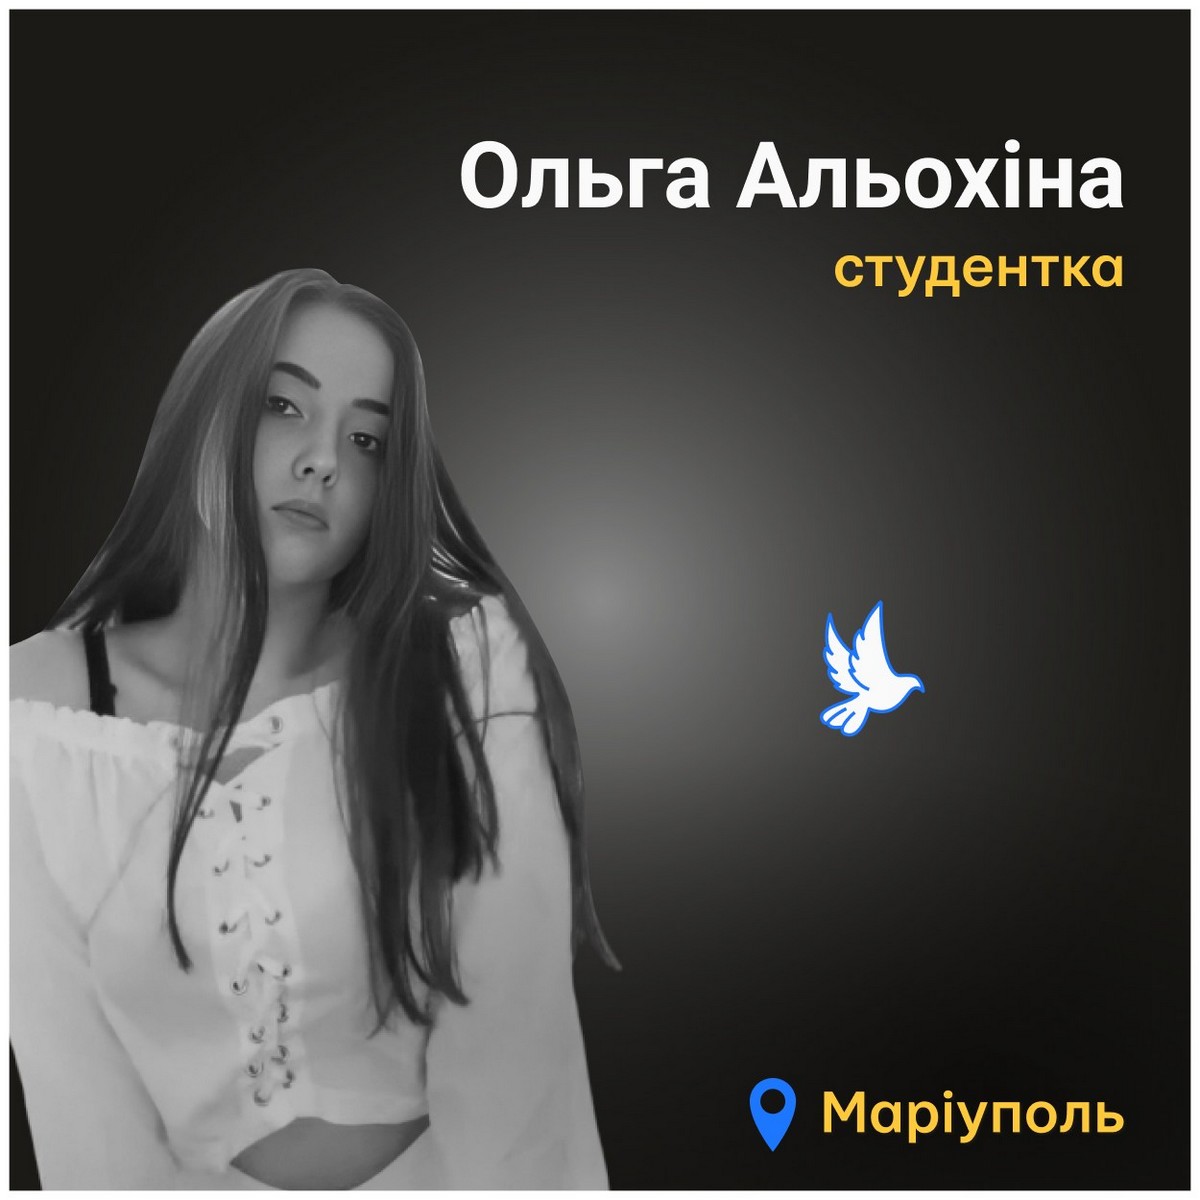 Меморіал: вбиті росією. Ольга Альохіна, 18 років, Маріуполь, березень